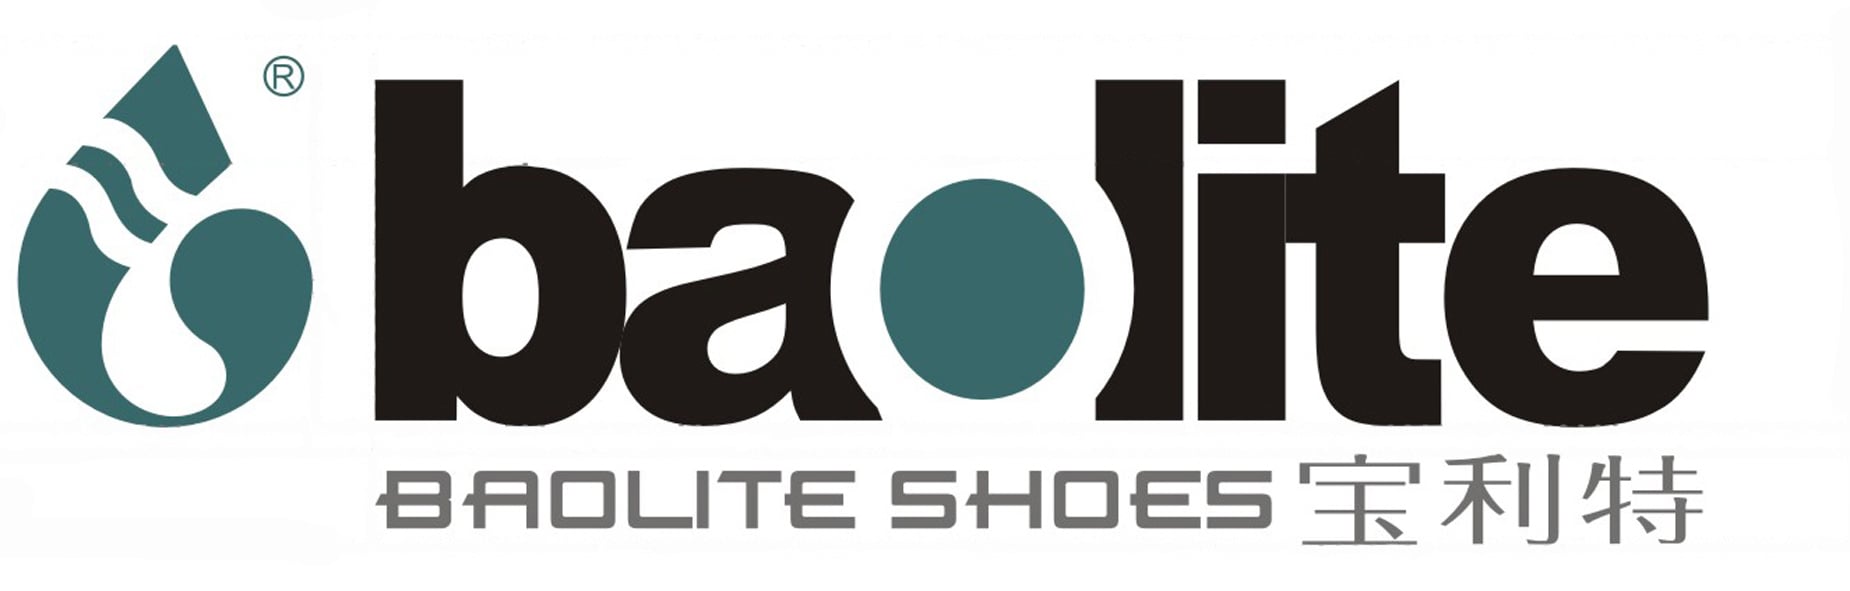 Taizhou Baolite Shoes